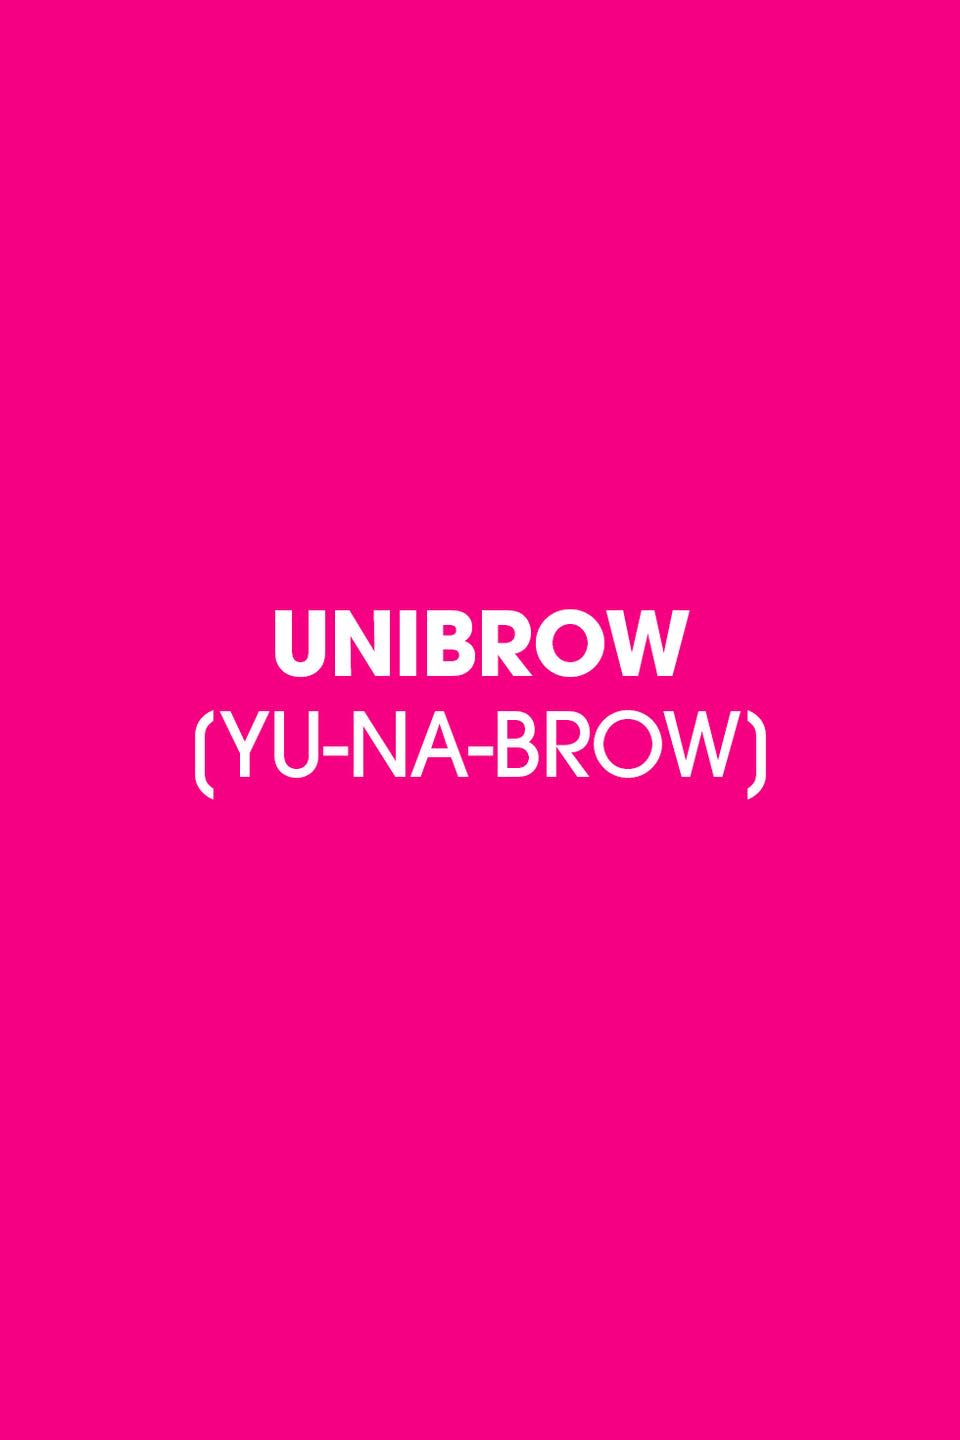 1988: Unibrow